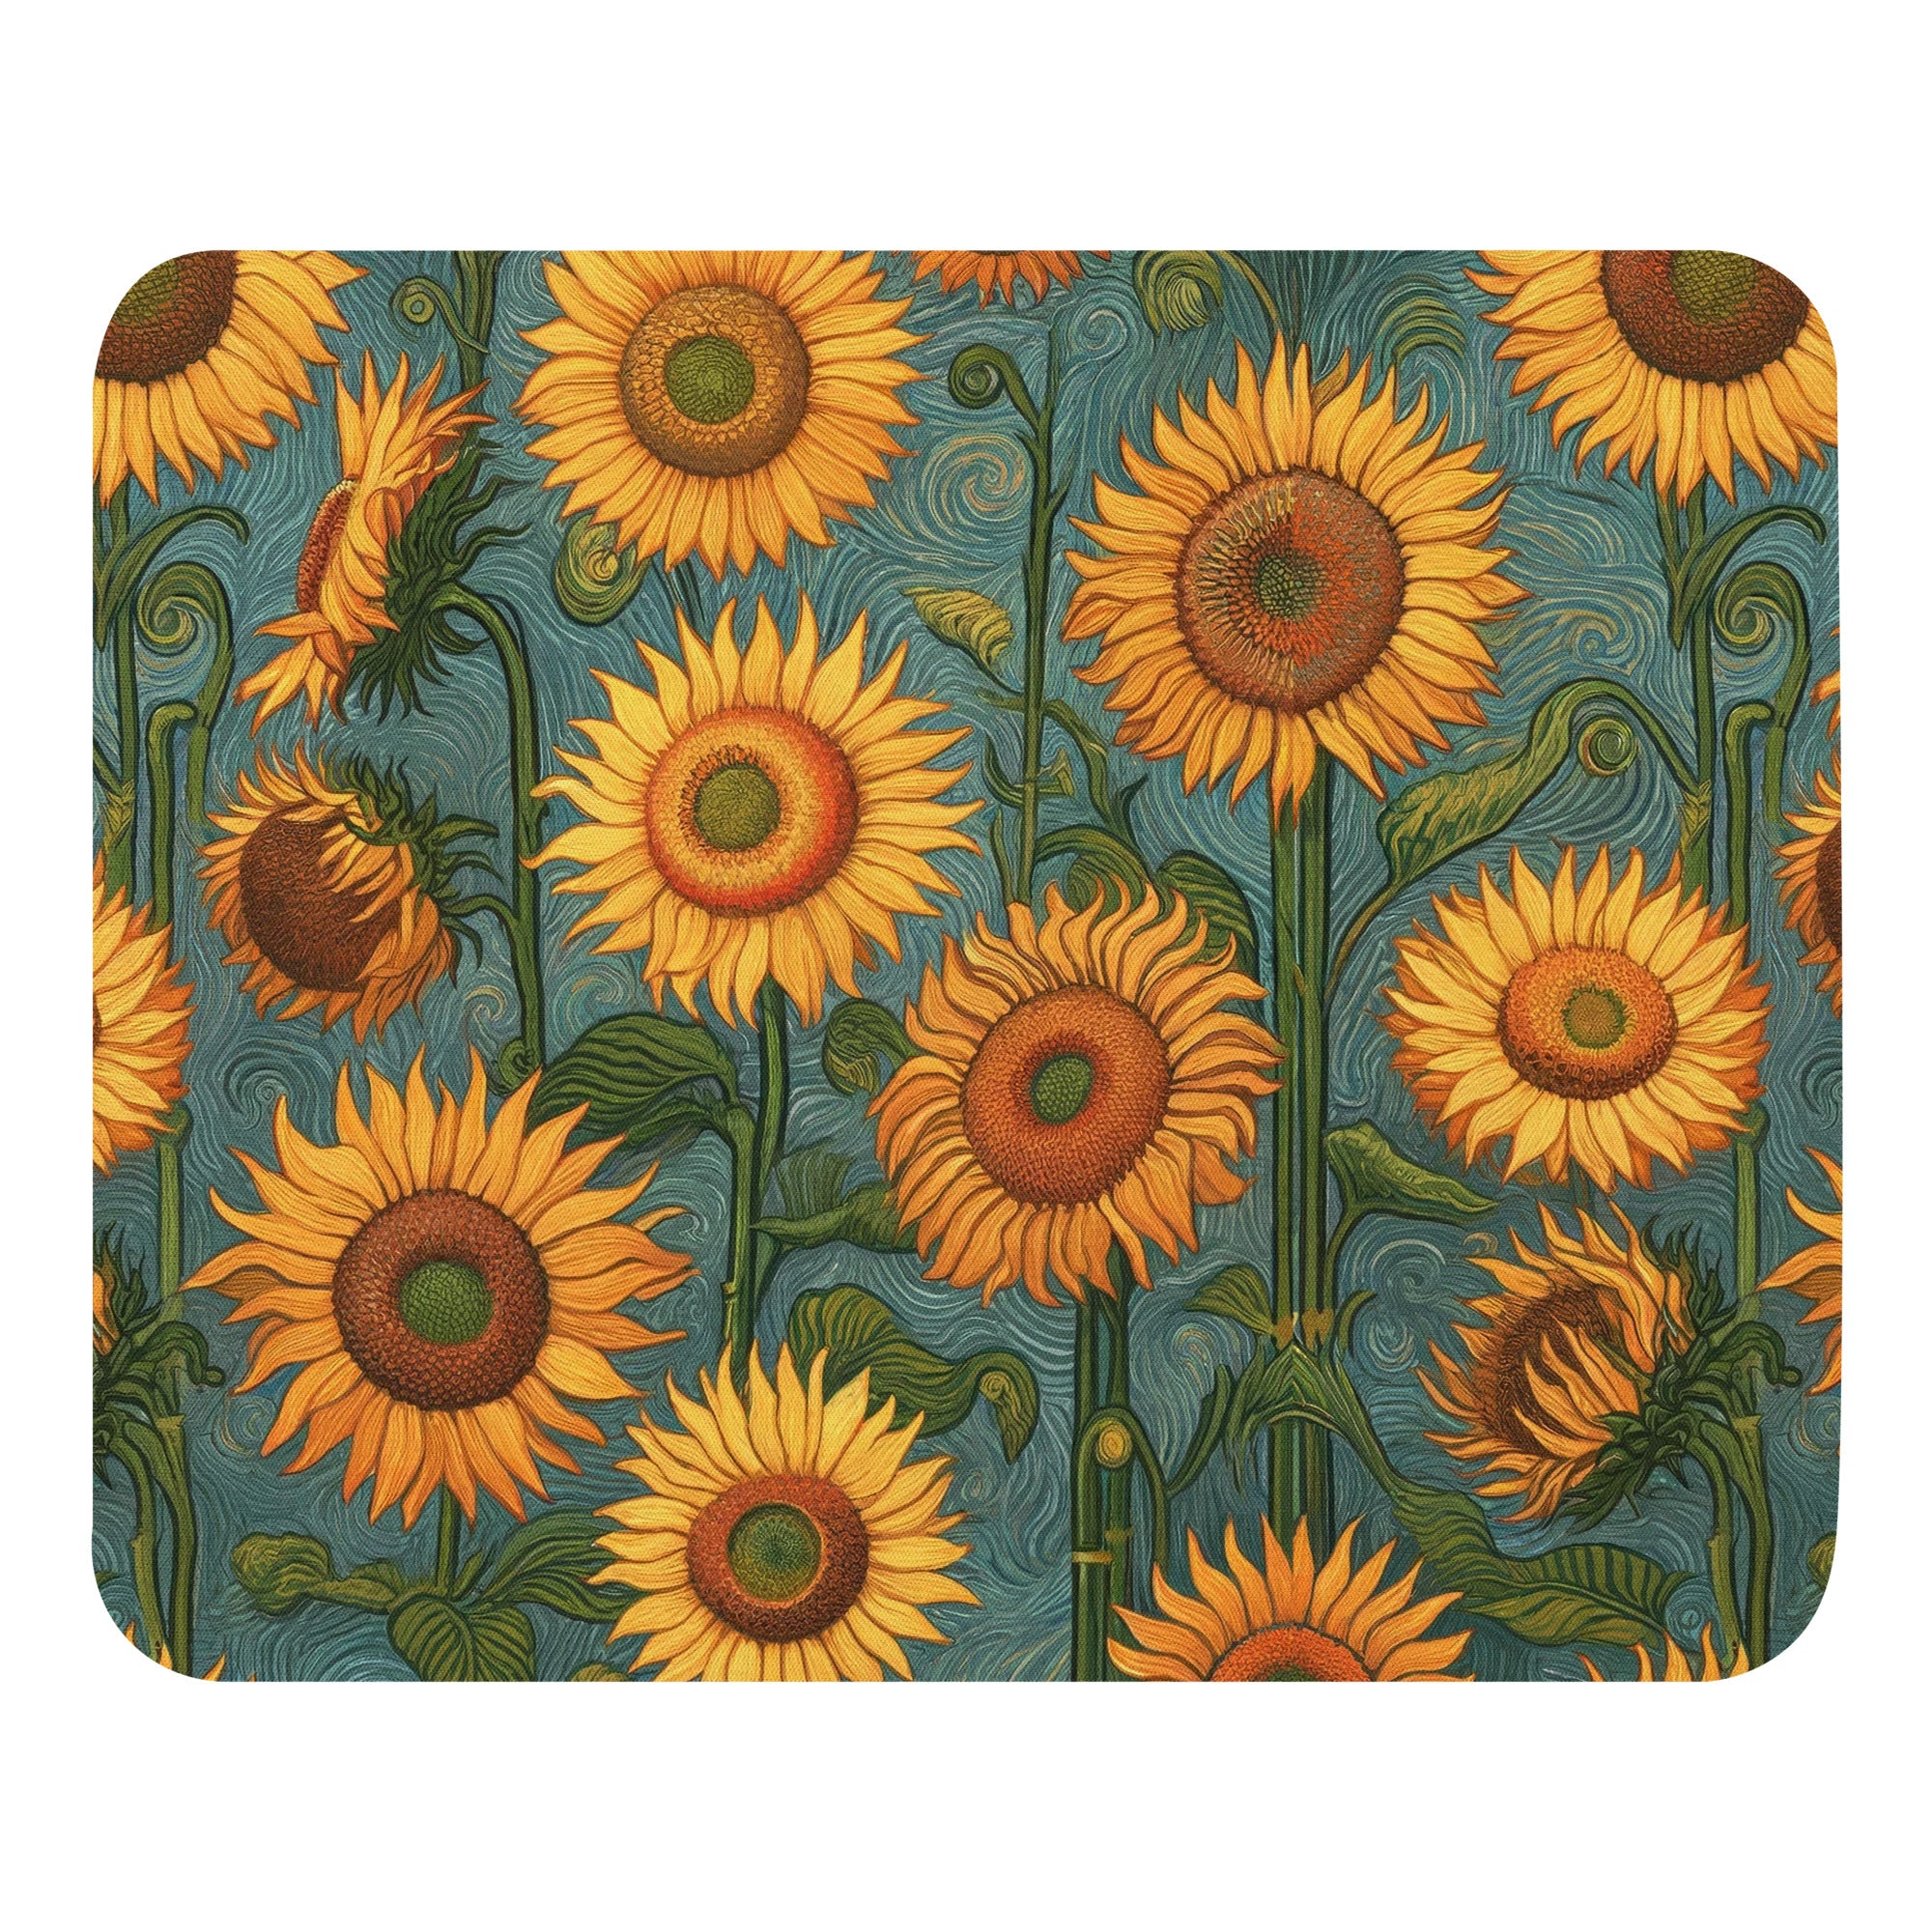 Vincent van Gogh 'Sunflowers' Famous Painting Mouse Pad | Premium Art Mouse Pad